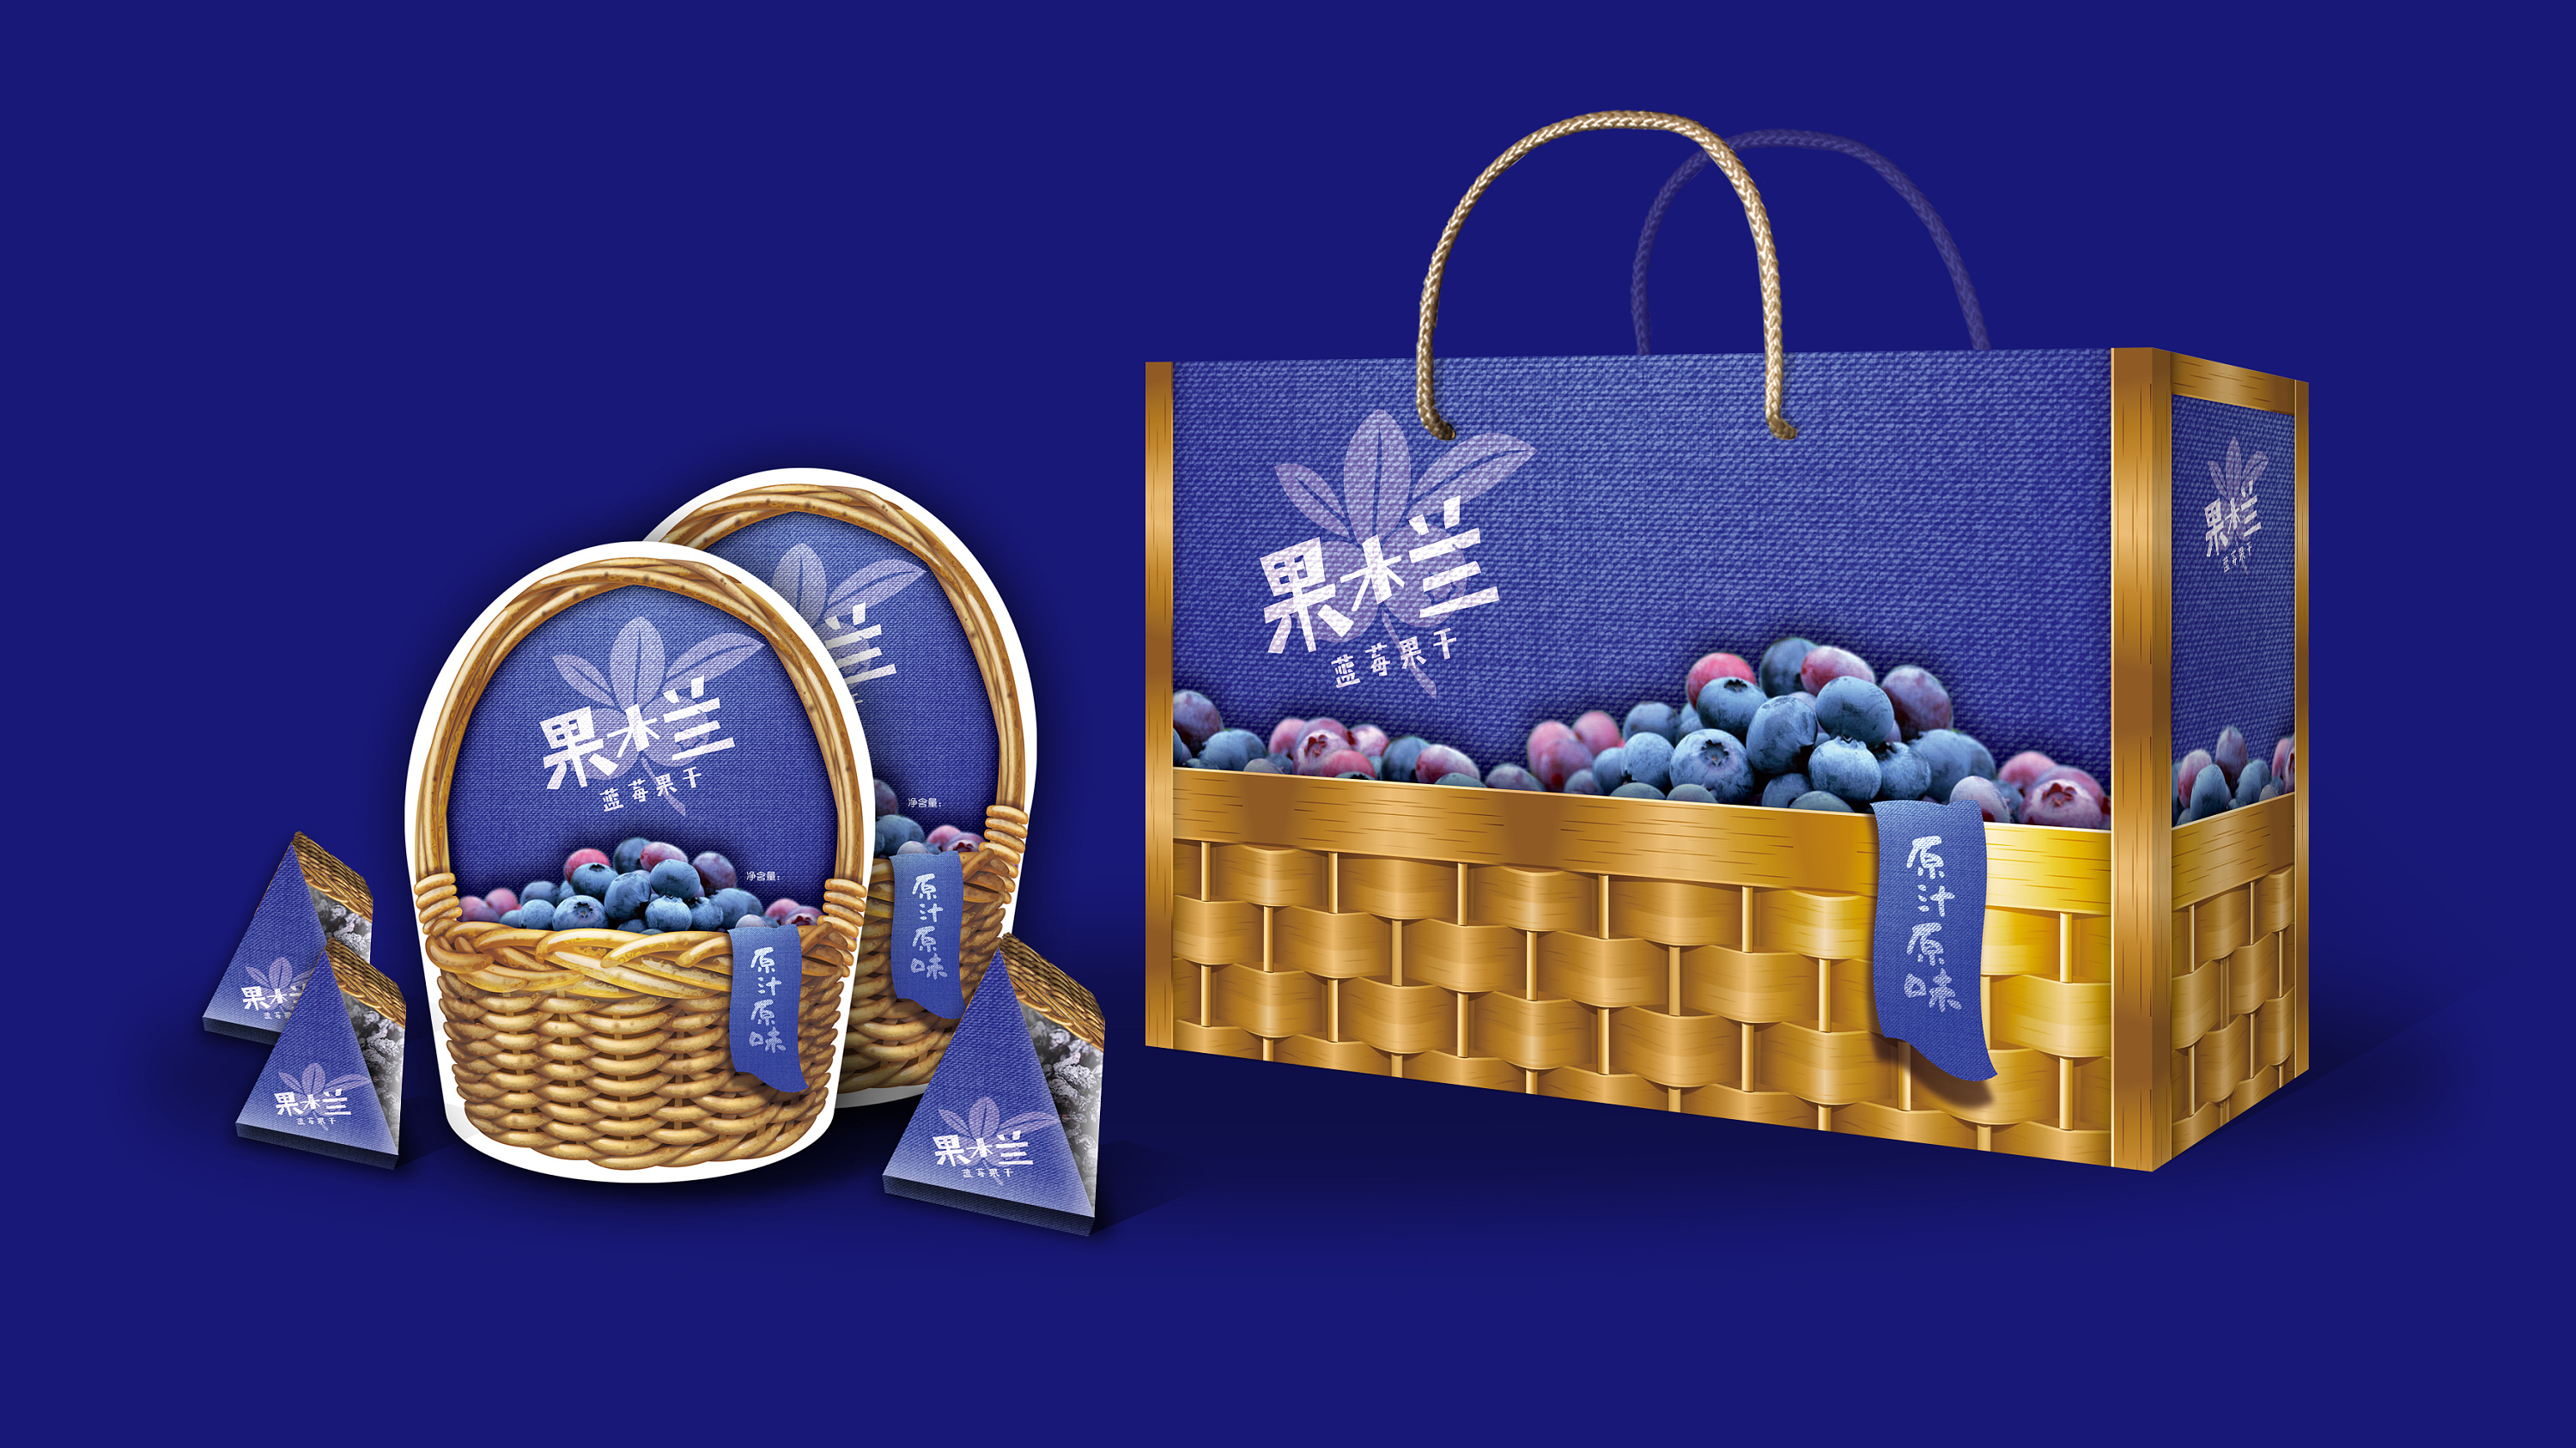 蓝莓包装设计